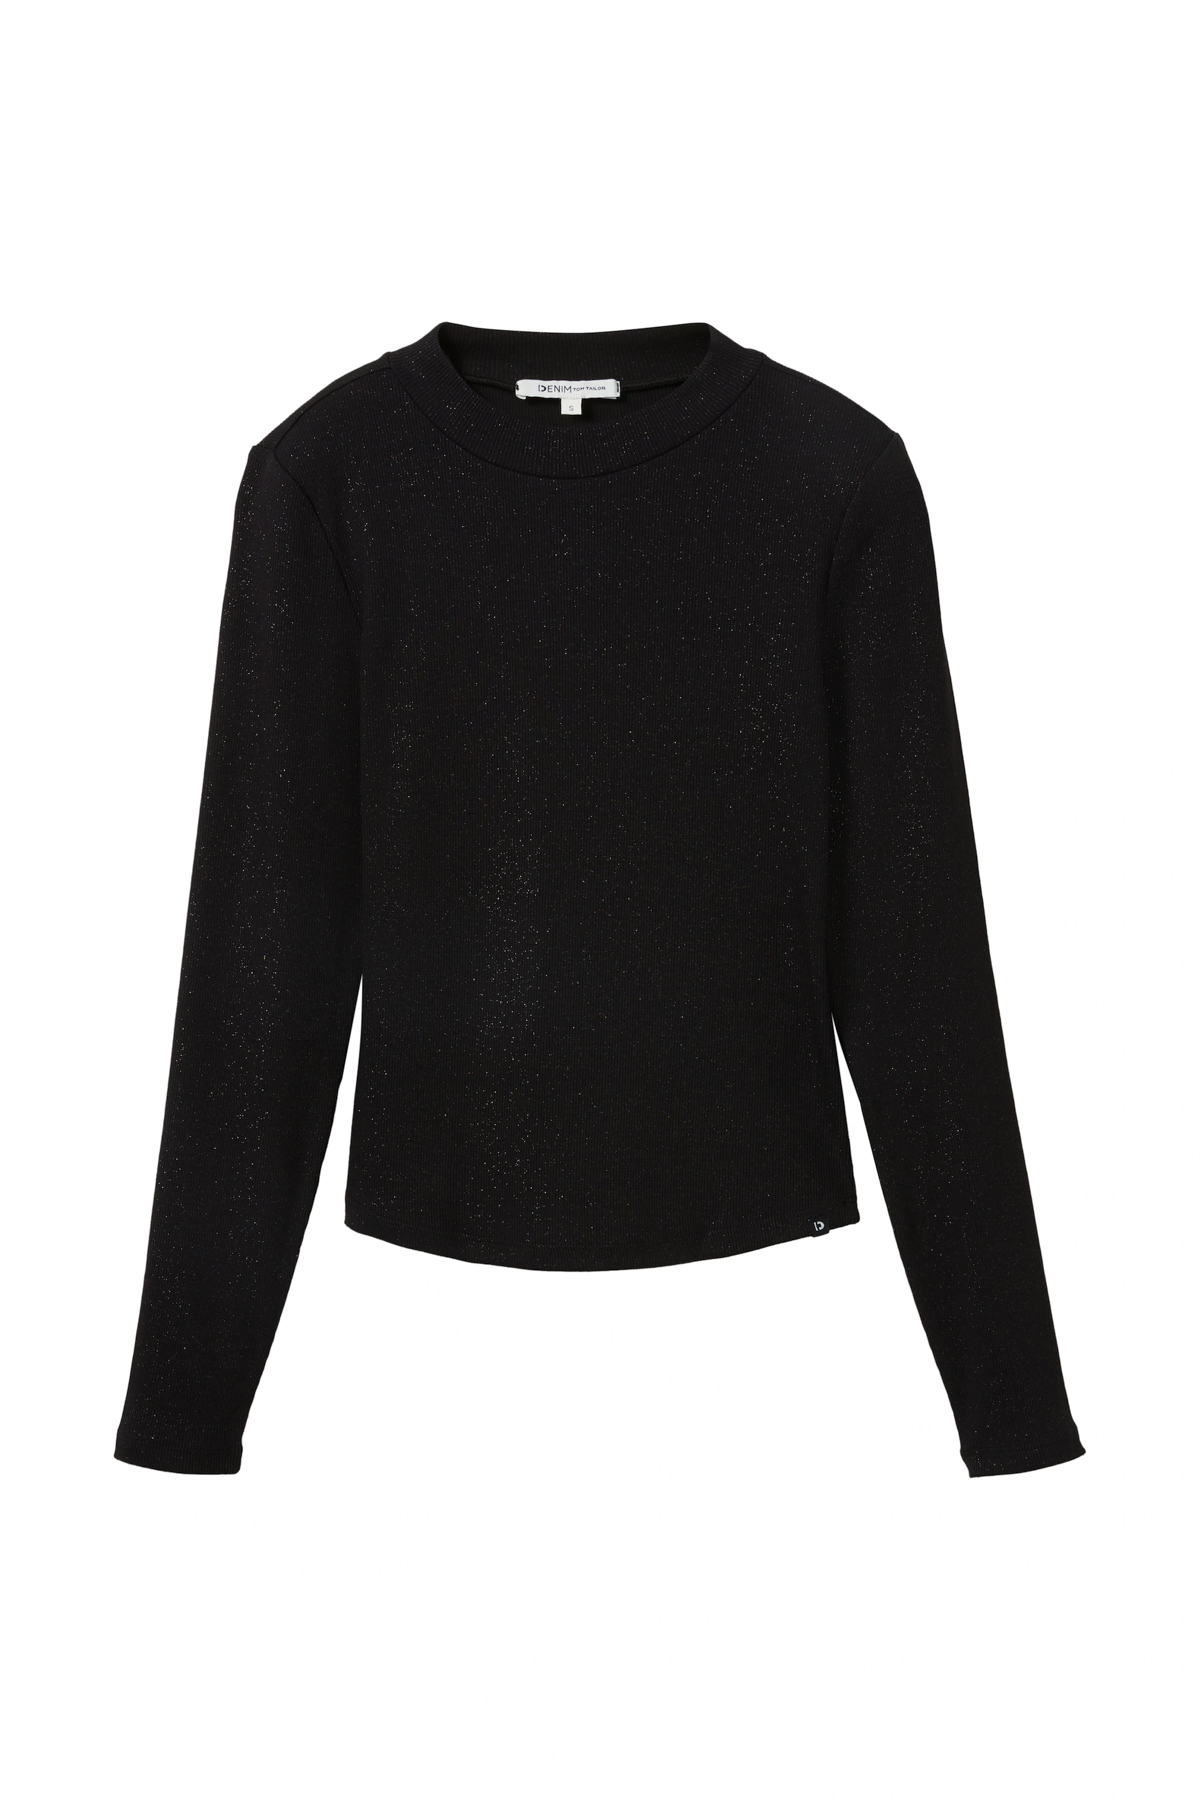 Свитер - Черный - Классический крой Tom Tailor Denim, черный свитер серый классический крой tom tailor denim серый